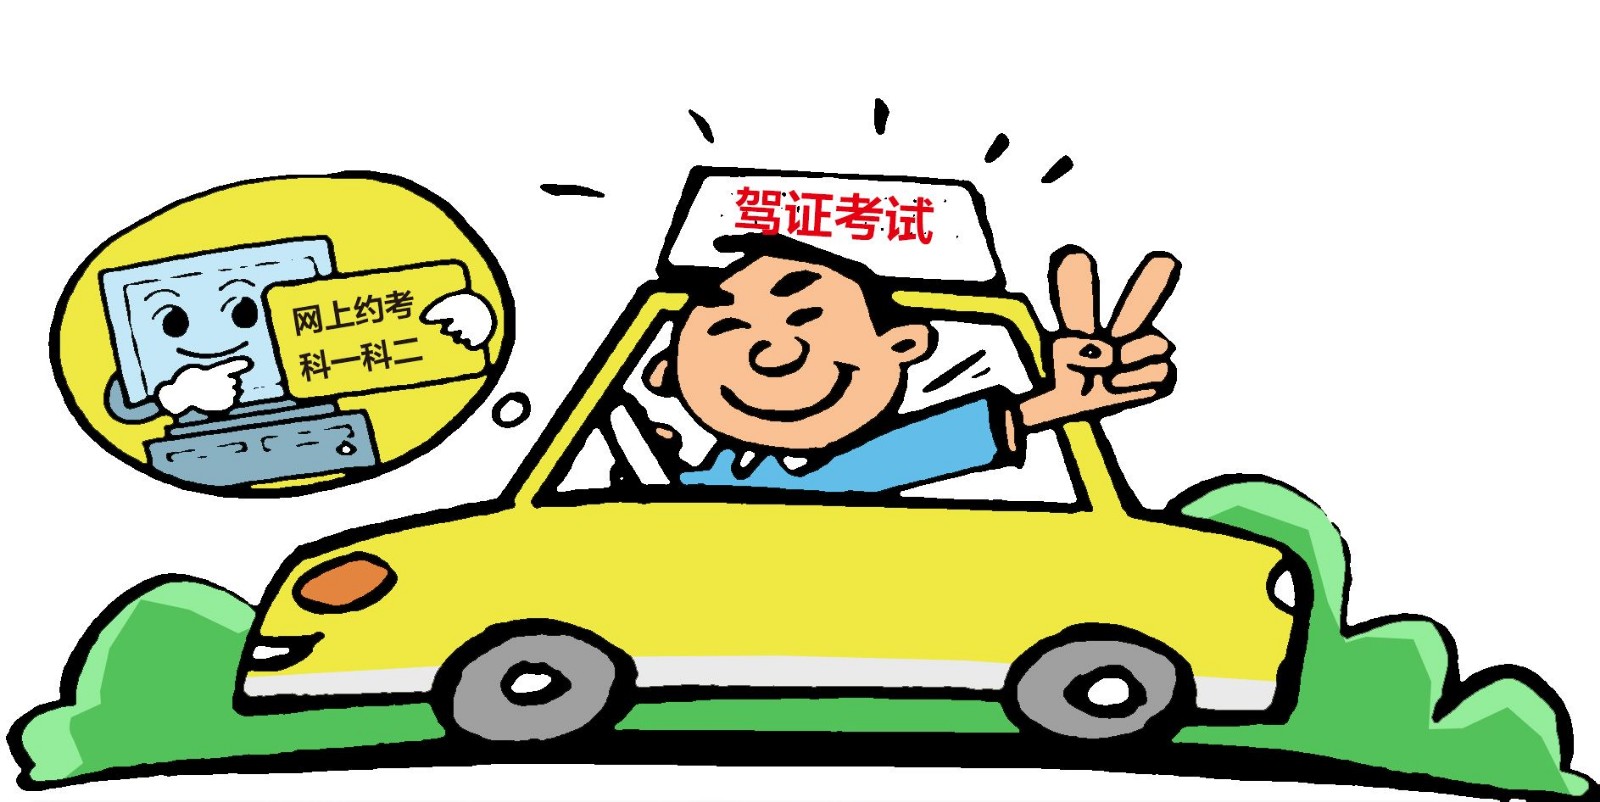 美国驾照换证案例_国外驾照换证案例 - 换驾照 huanjiazhao.com